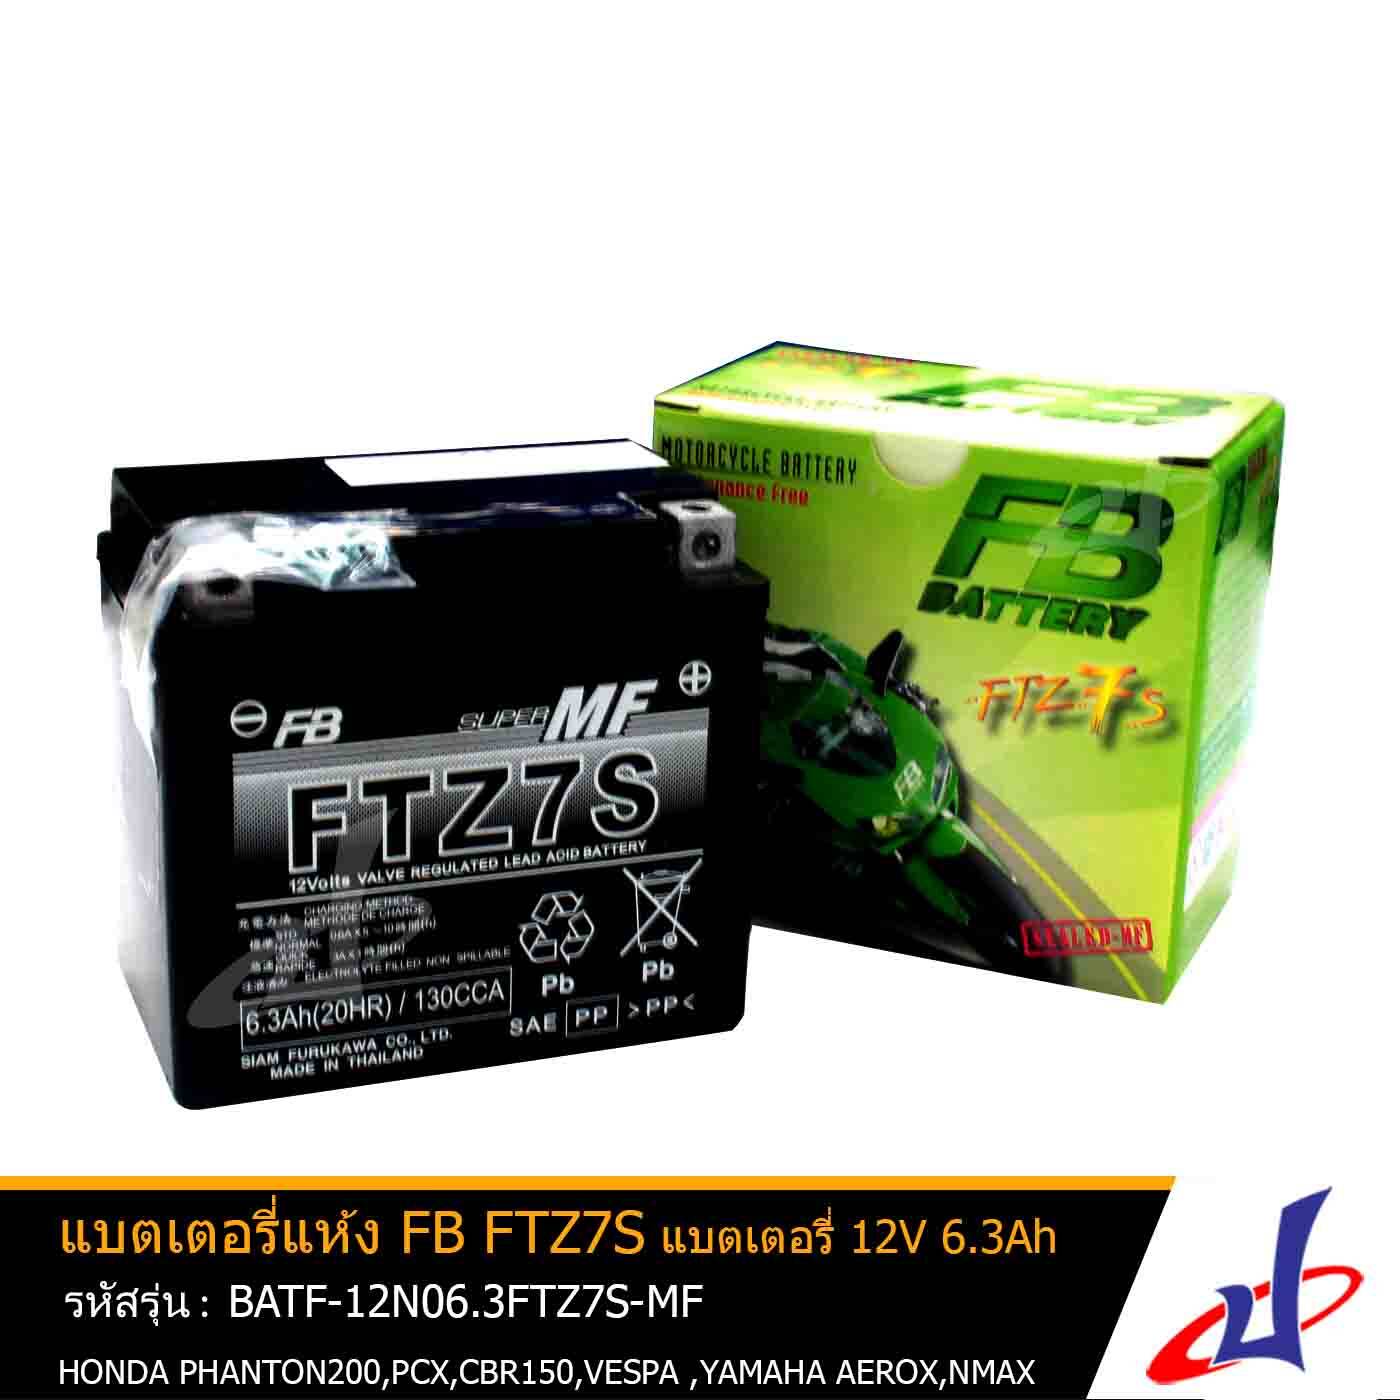 แบตเตอรี่แห้ง FTZ7S-MF ยี่ห้อ FB BATTERYFB  7 Amp. FB Battery (FTZ7s) 7 Amp. ใช้สำหรับมอเตอร์ไซด์ ฮอนด้า  ยามาฮ่า